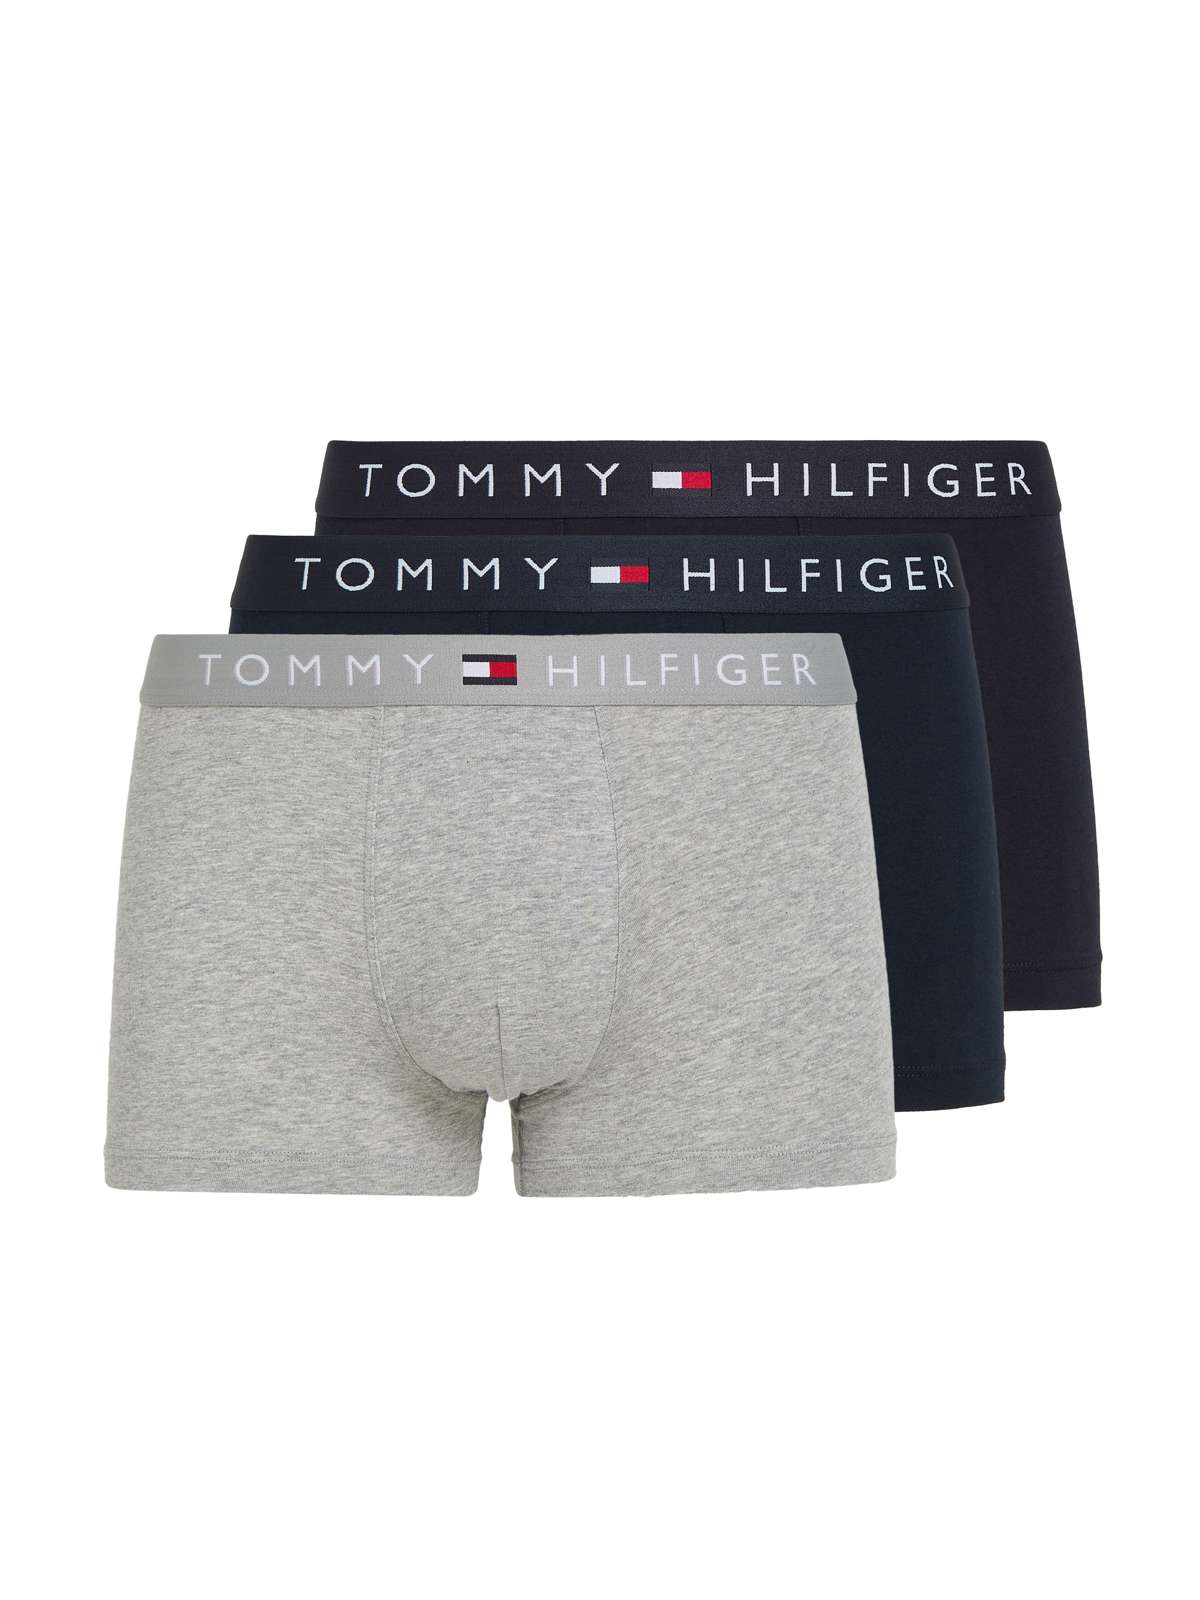 Чемодан (3 шт. в упаковке, 3 шт. в упаковке), с эластичным поясом с логотипом Tommy Hilfiger.